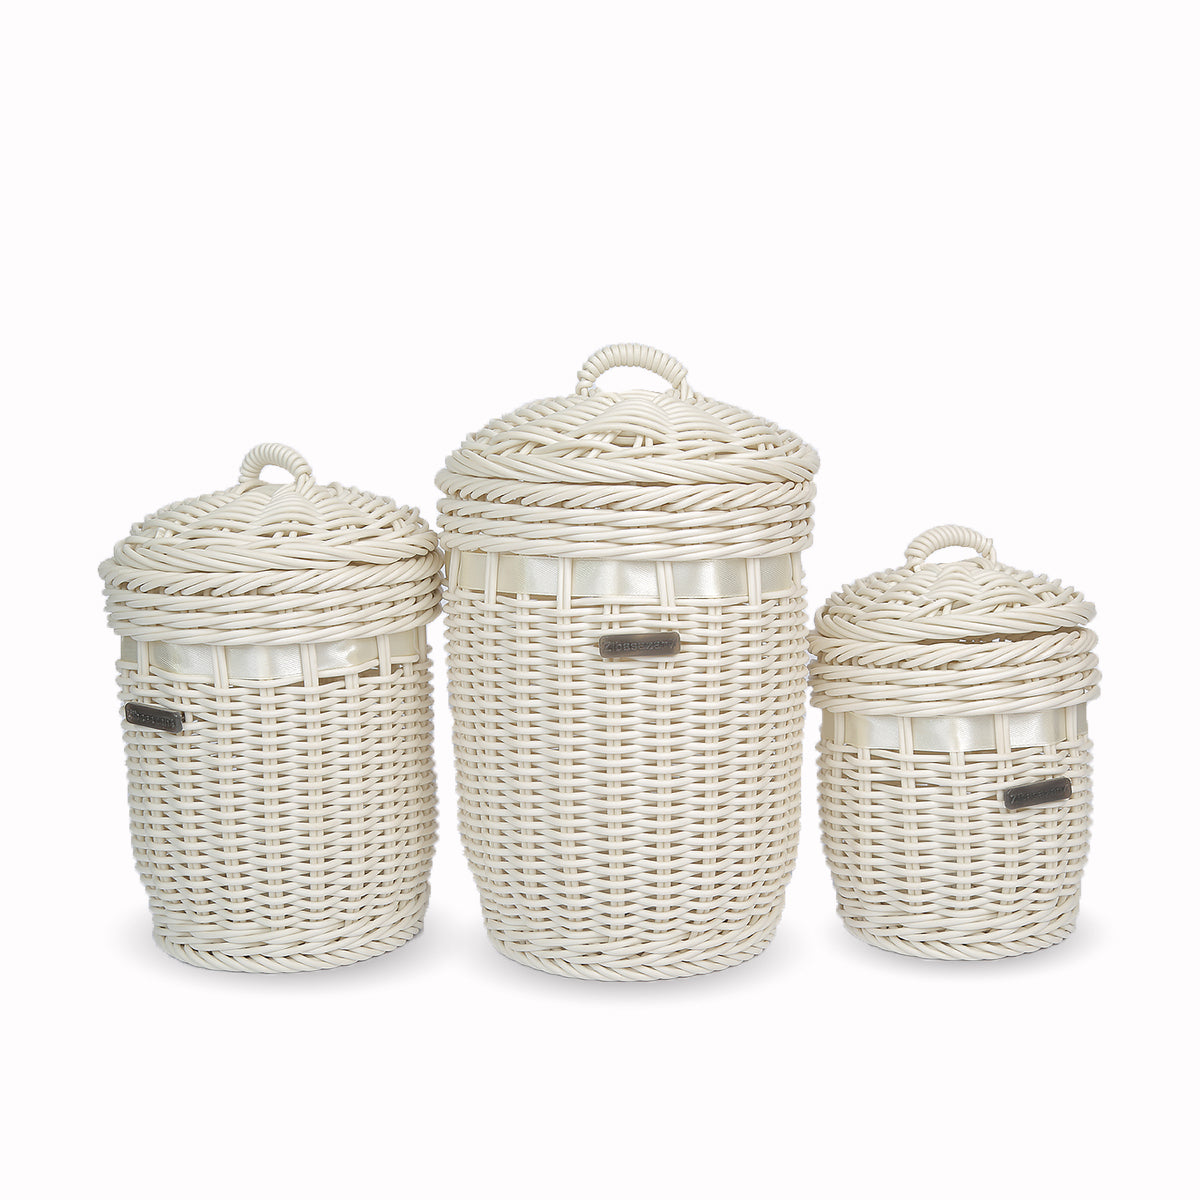 Bamboo Basket with Cap (3 Pieces set)